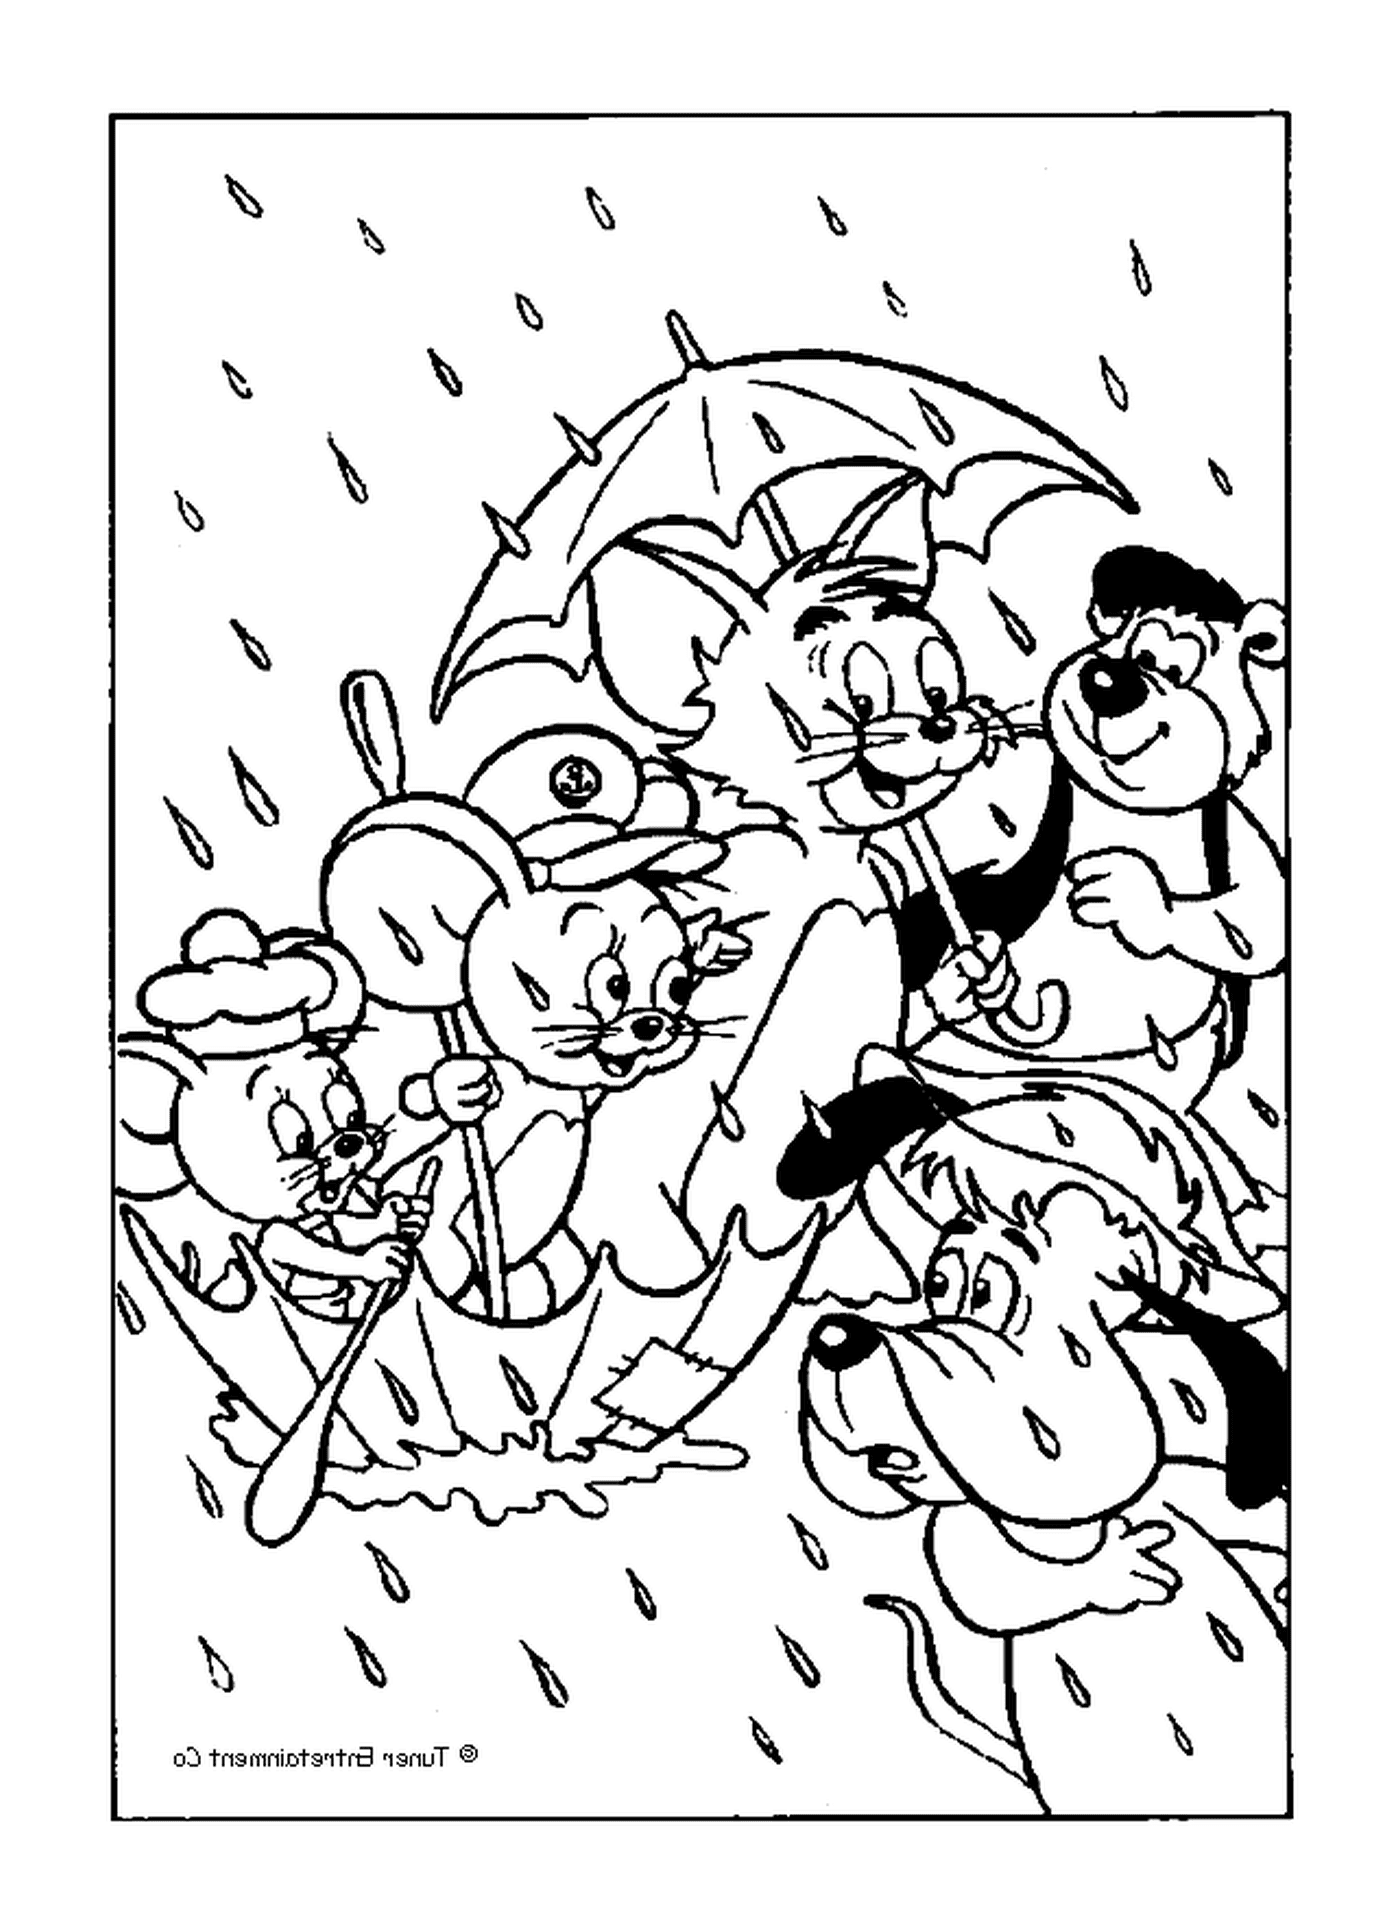  Tom y Jerry bajo la lluvia 